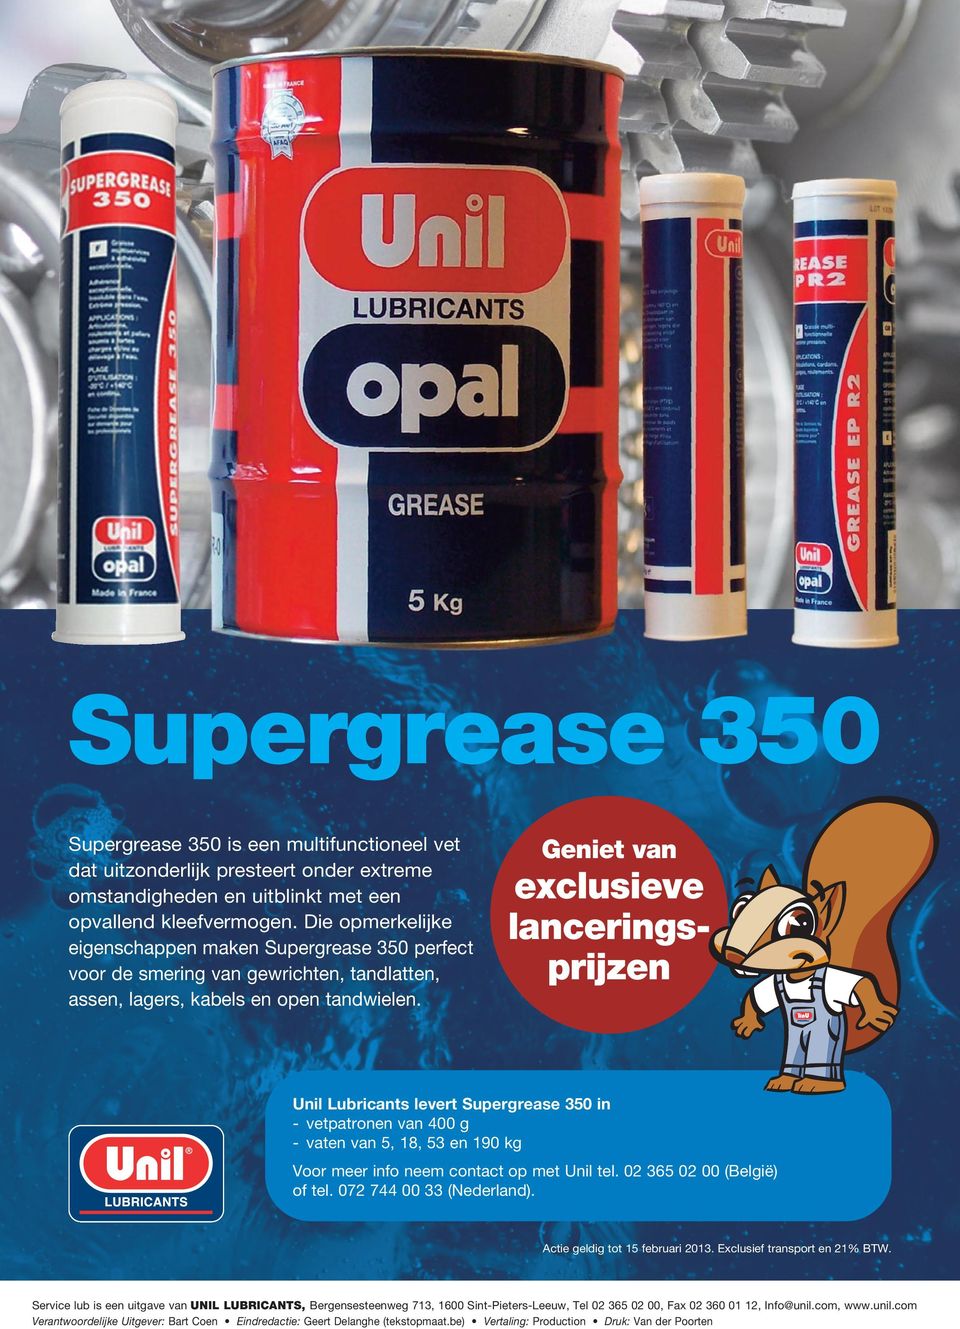 Geniet van exclusieve lanceringsprijzen Unil Lubricants levert Supergrease 350 in - vetpatronen van 400 g - vaten van 5, 18, 53 en 190 kg Voor meer info neem contact op met Unil tel.